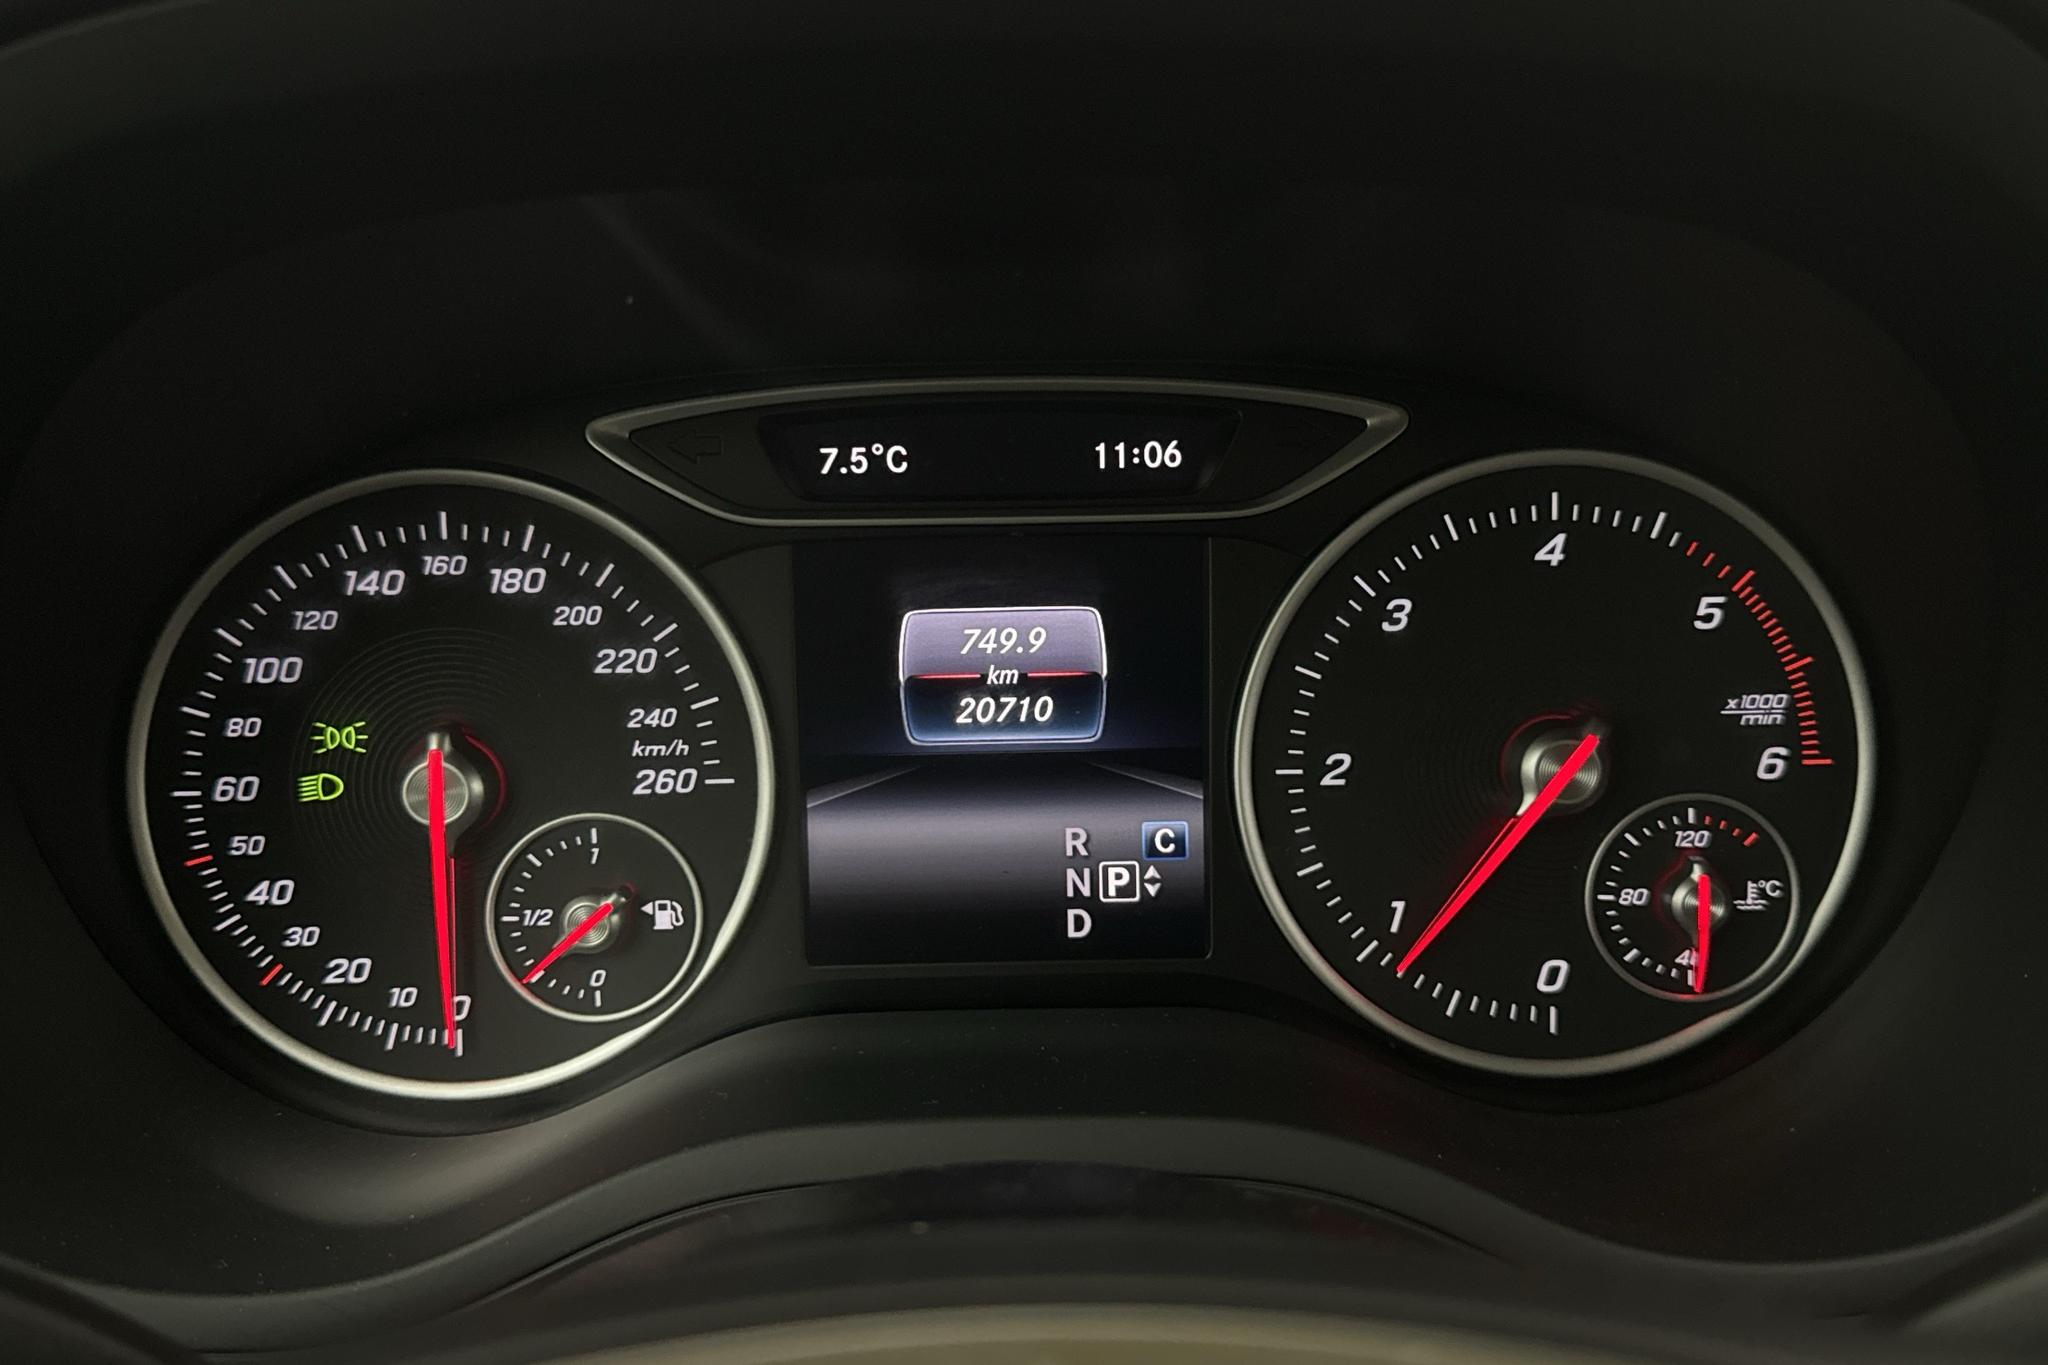 Mercedes B 200 d 4MATIC W246 (136hk) - 2 071 mil - Automat - Dark Grey - 2018